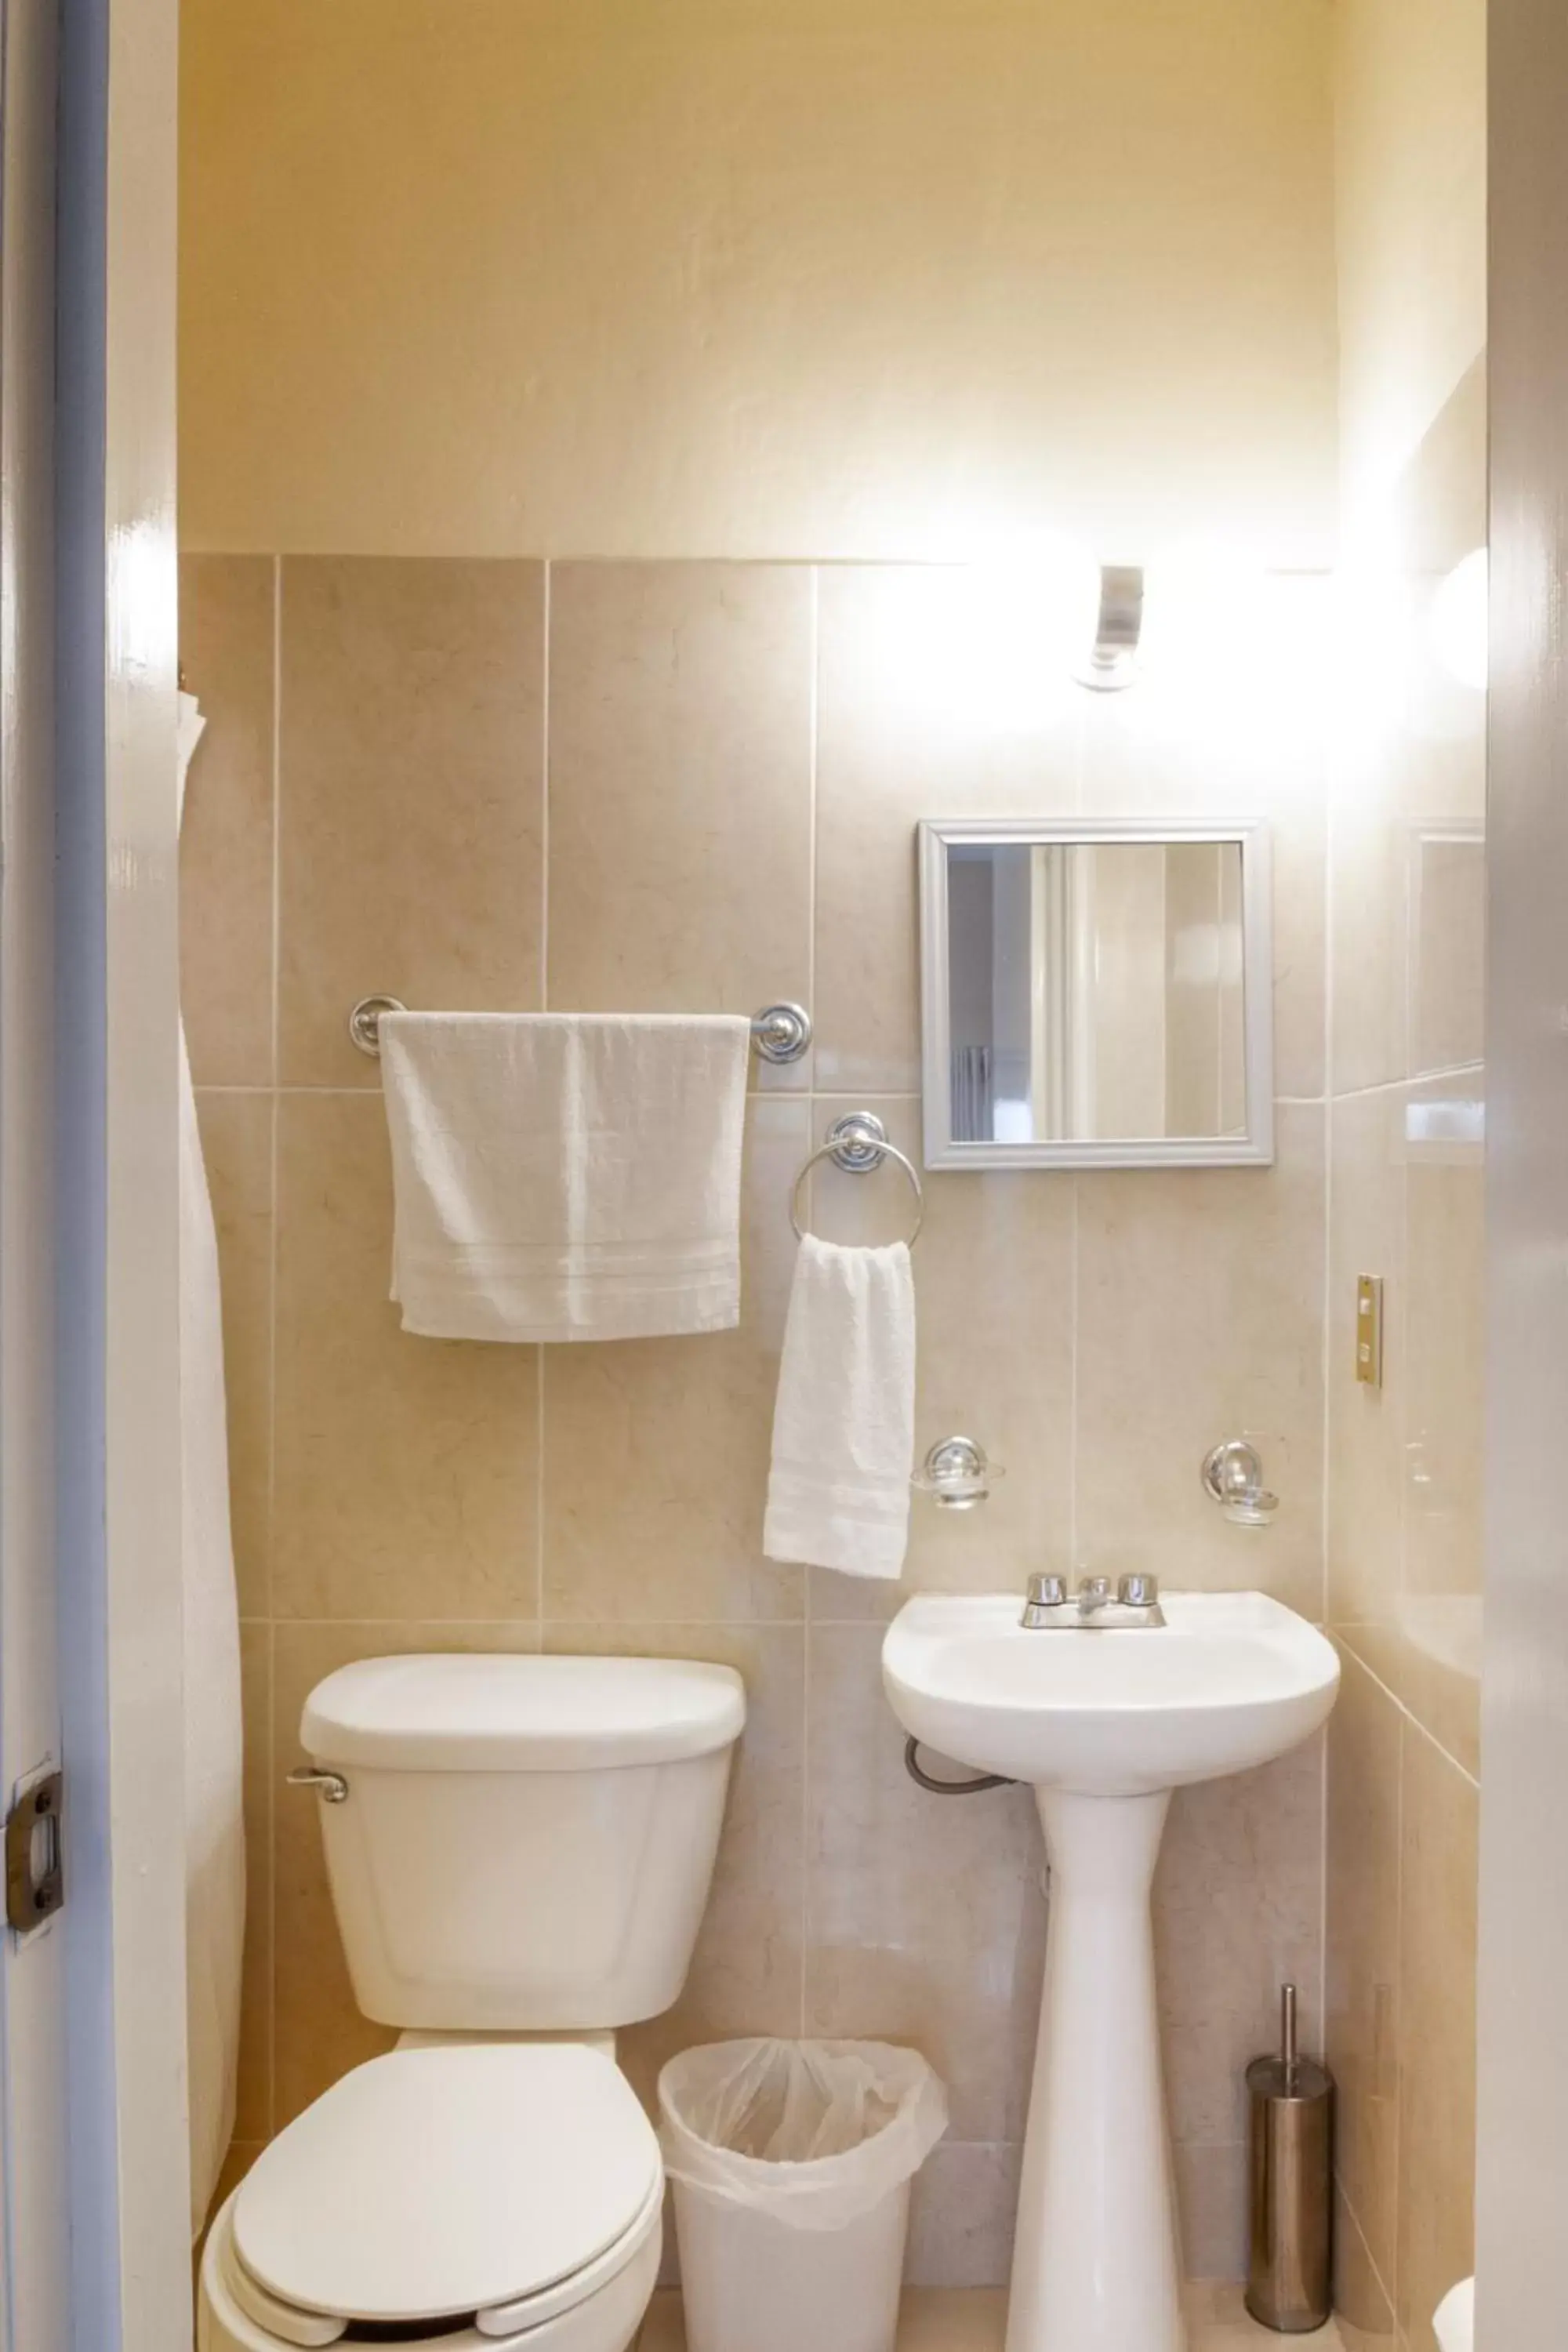 Photo of the whole room, Bathroom in Casa de Luz